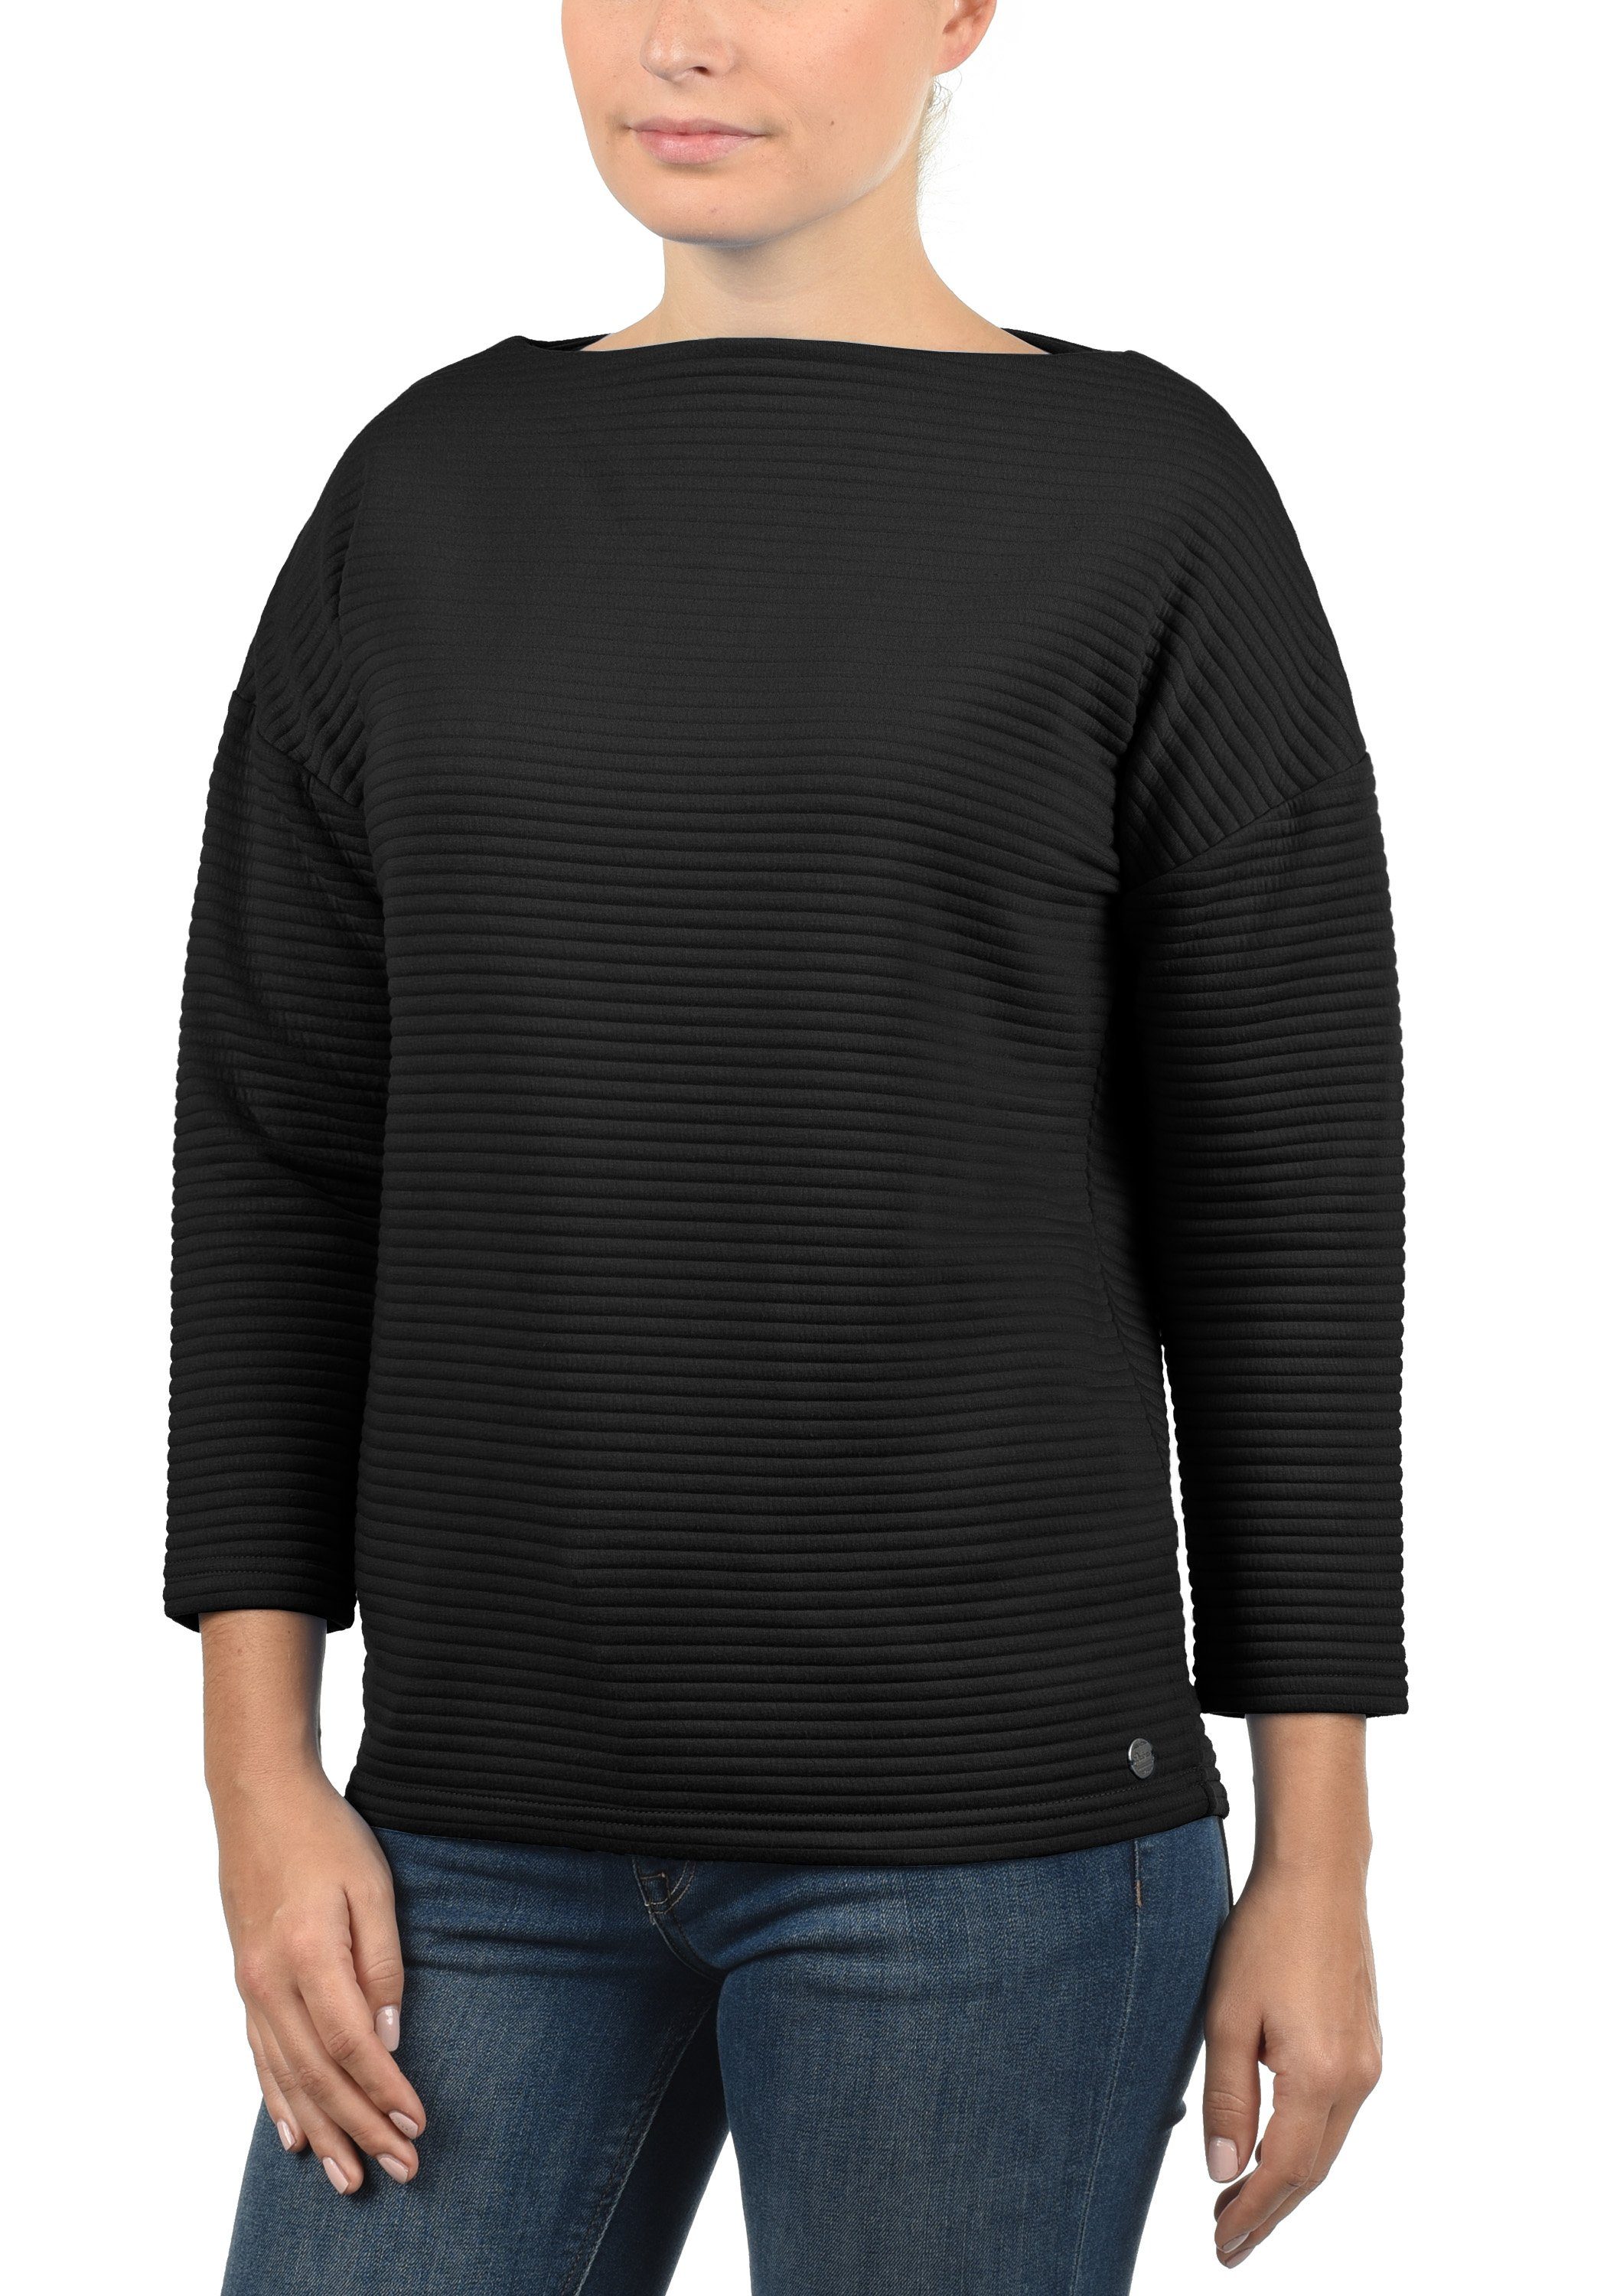 DESIRES Sweatshirt Jona Sweater weit geschnitten Black (9000)